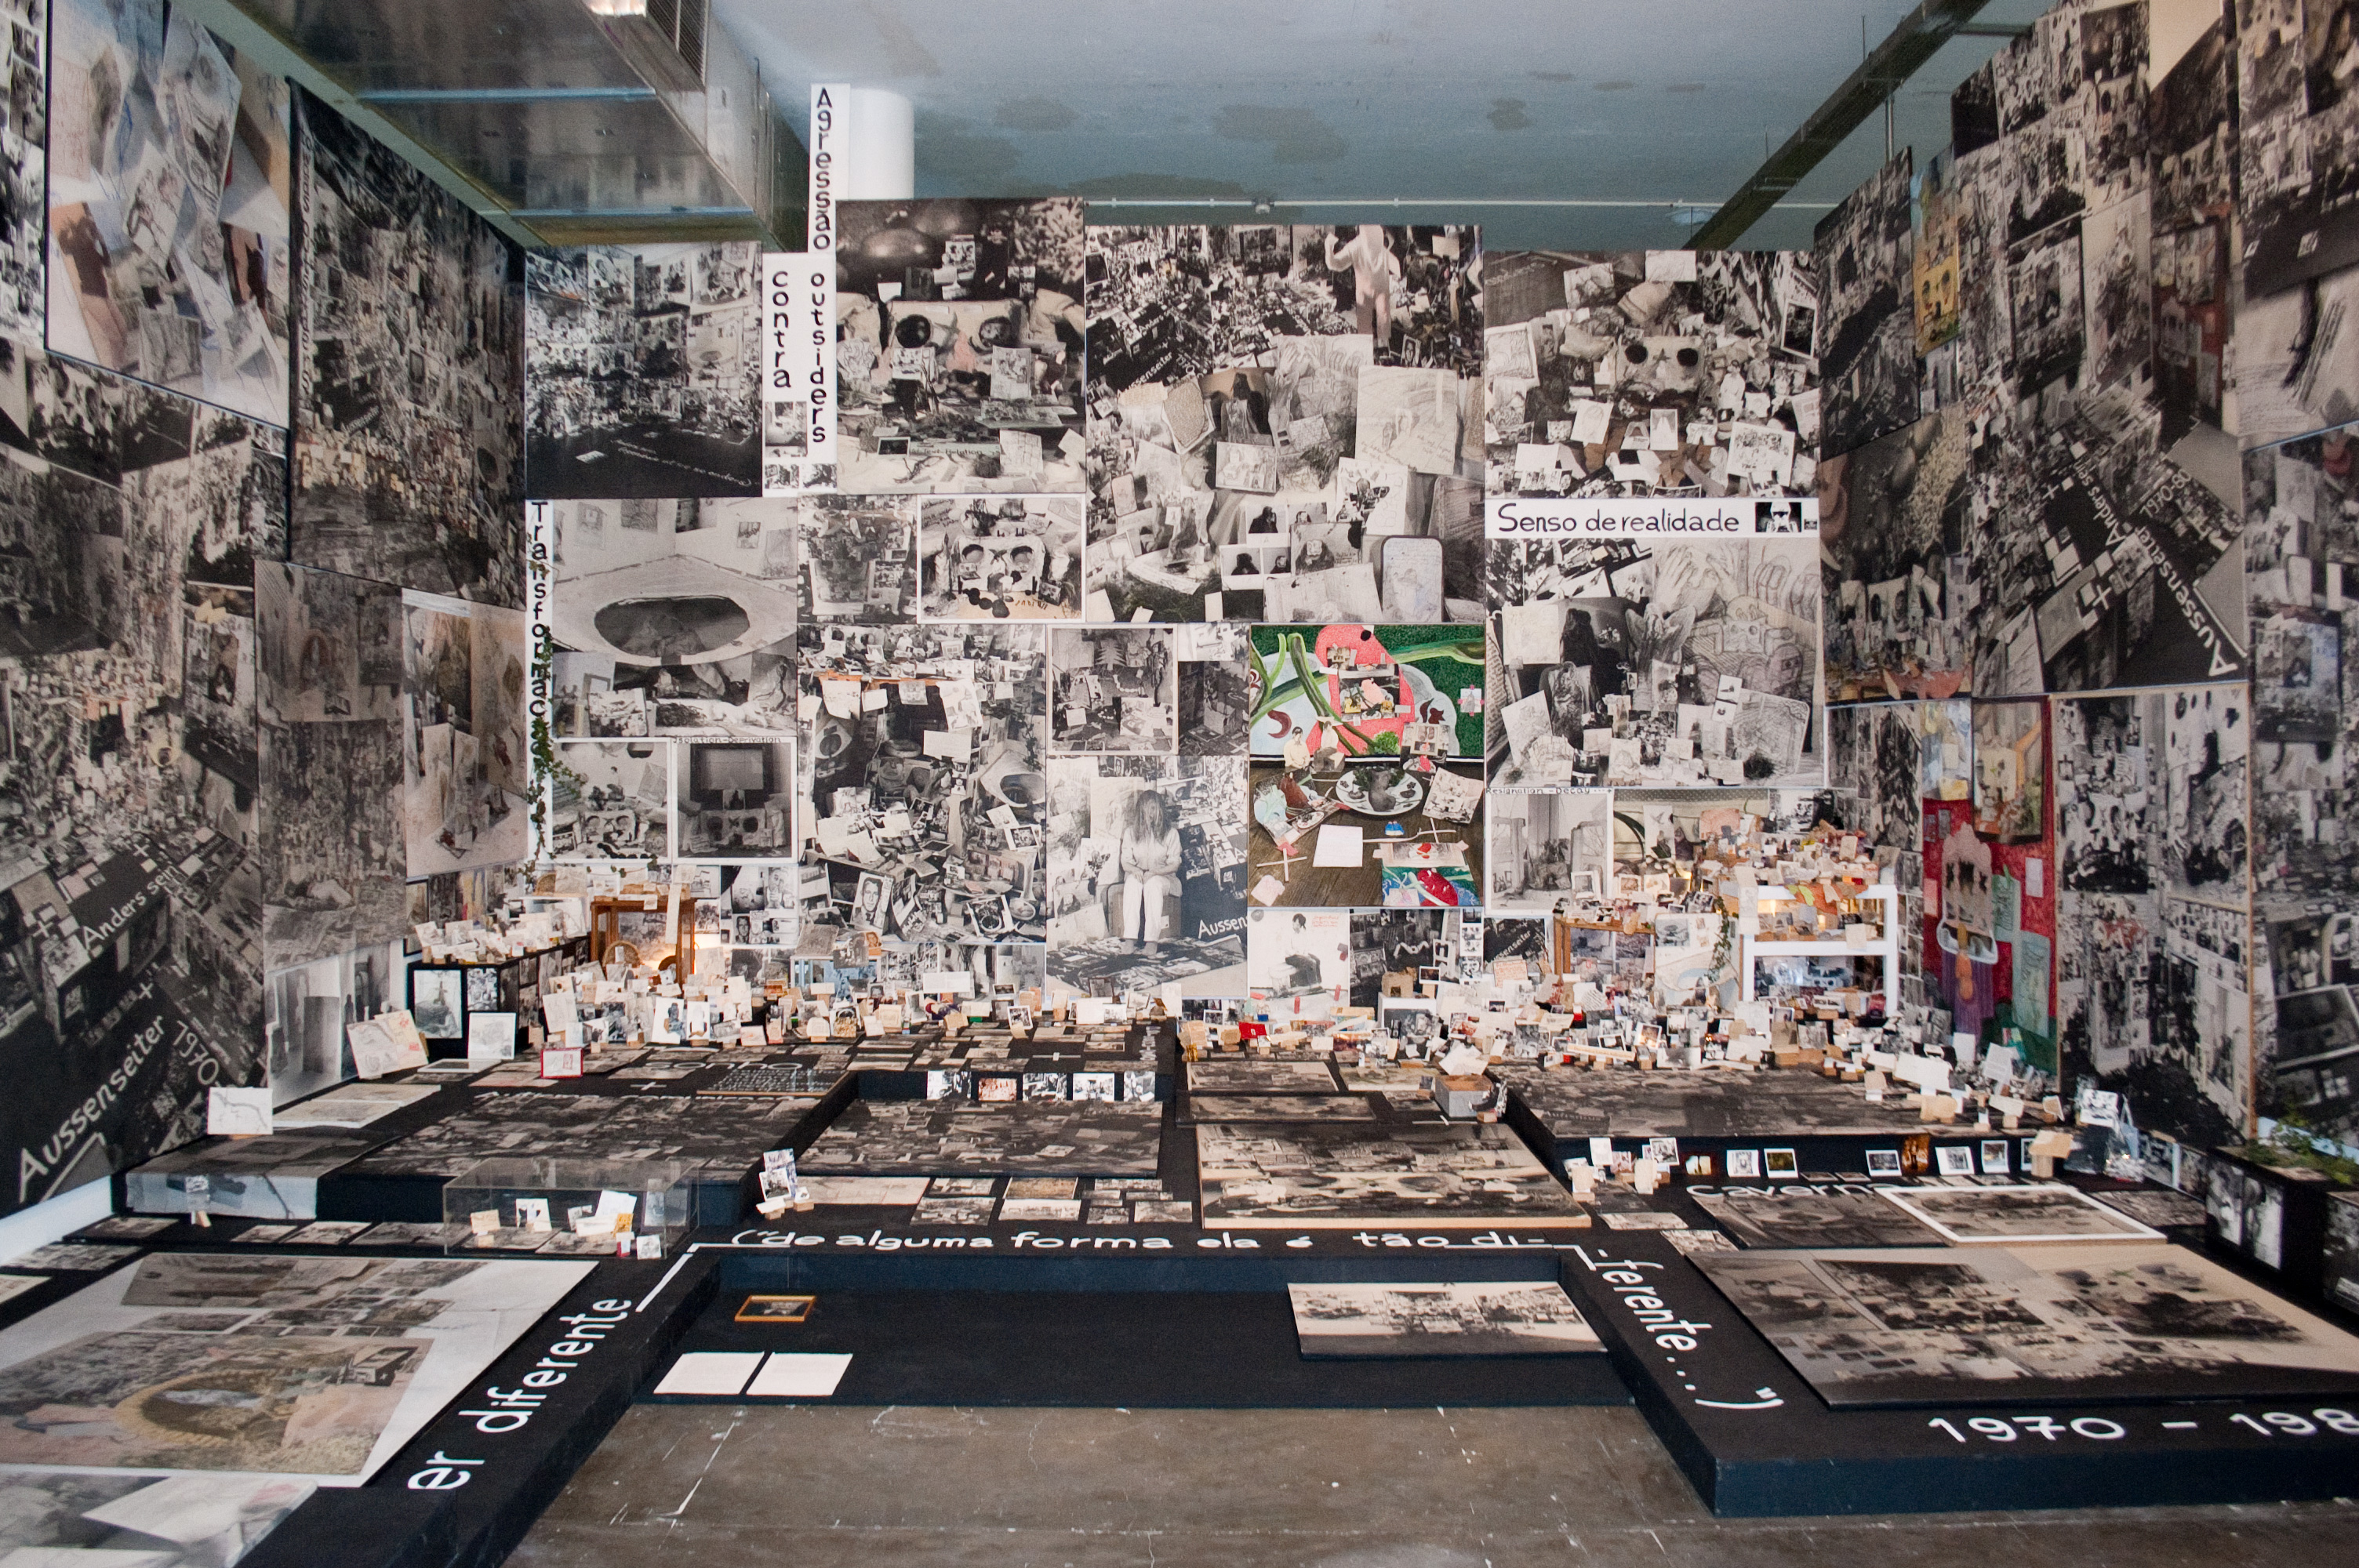 Galerie Barbara Thumm \ Anna Oppermann – Sao Paulo Biennale